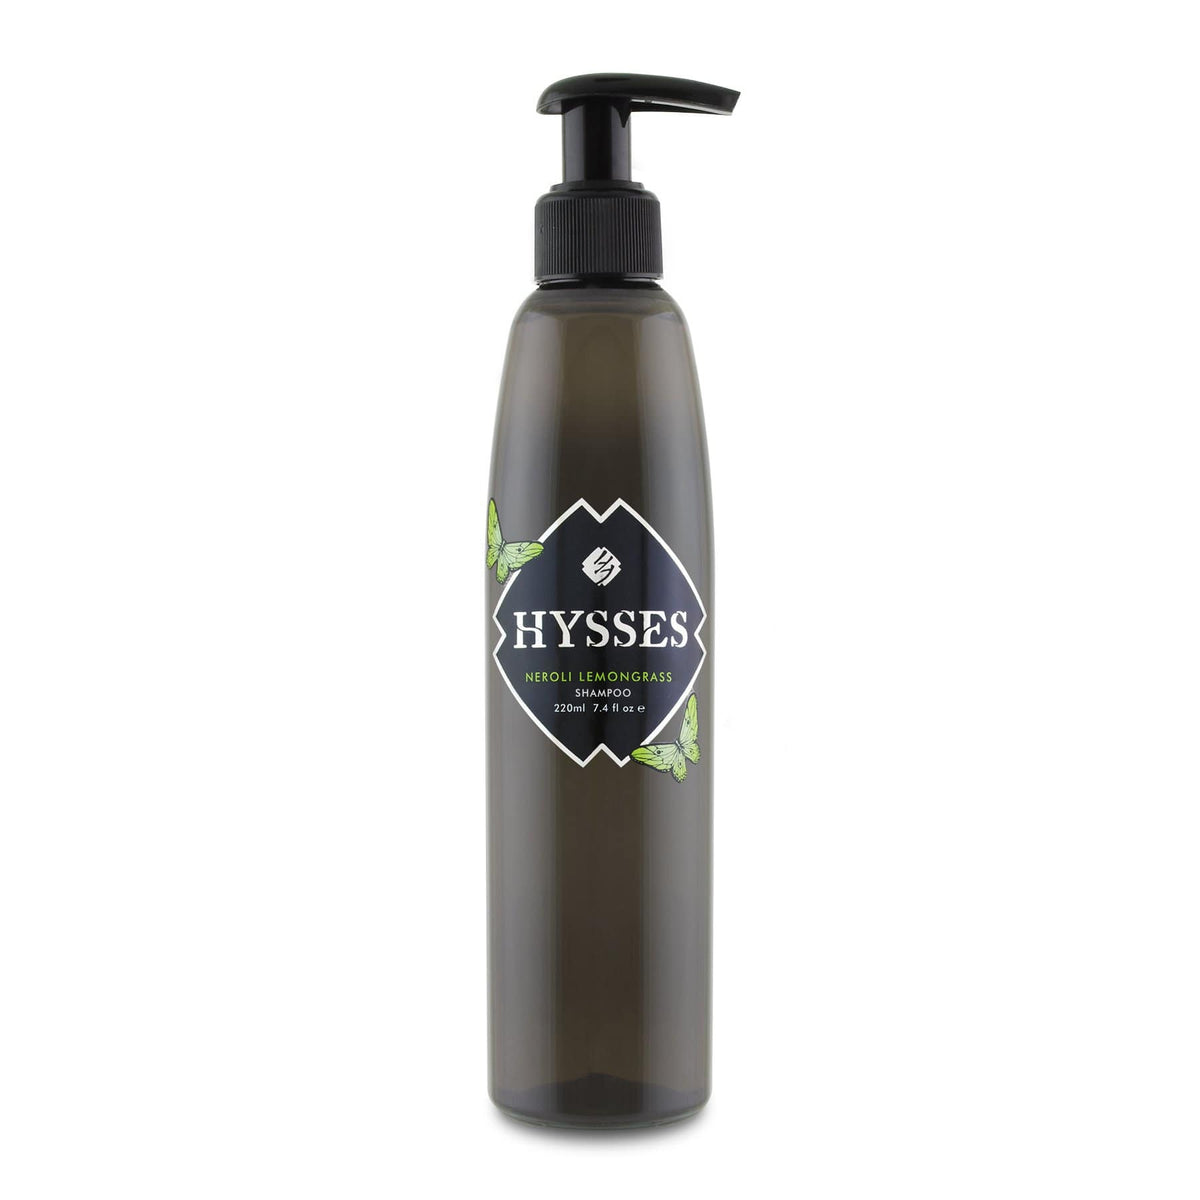 Hysses Hair Care 500ml Shampoo Neroli Lemongrass